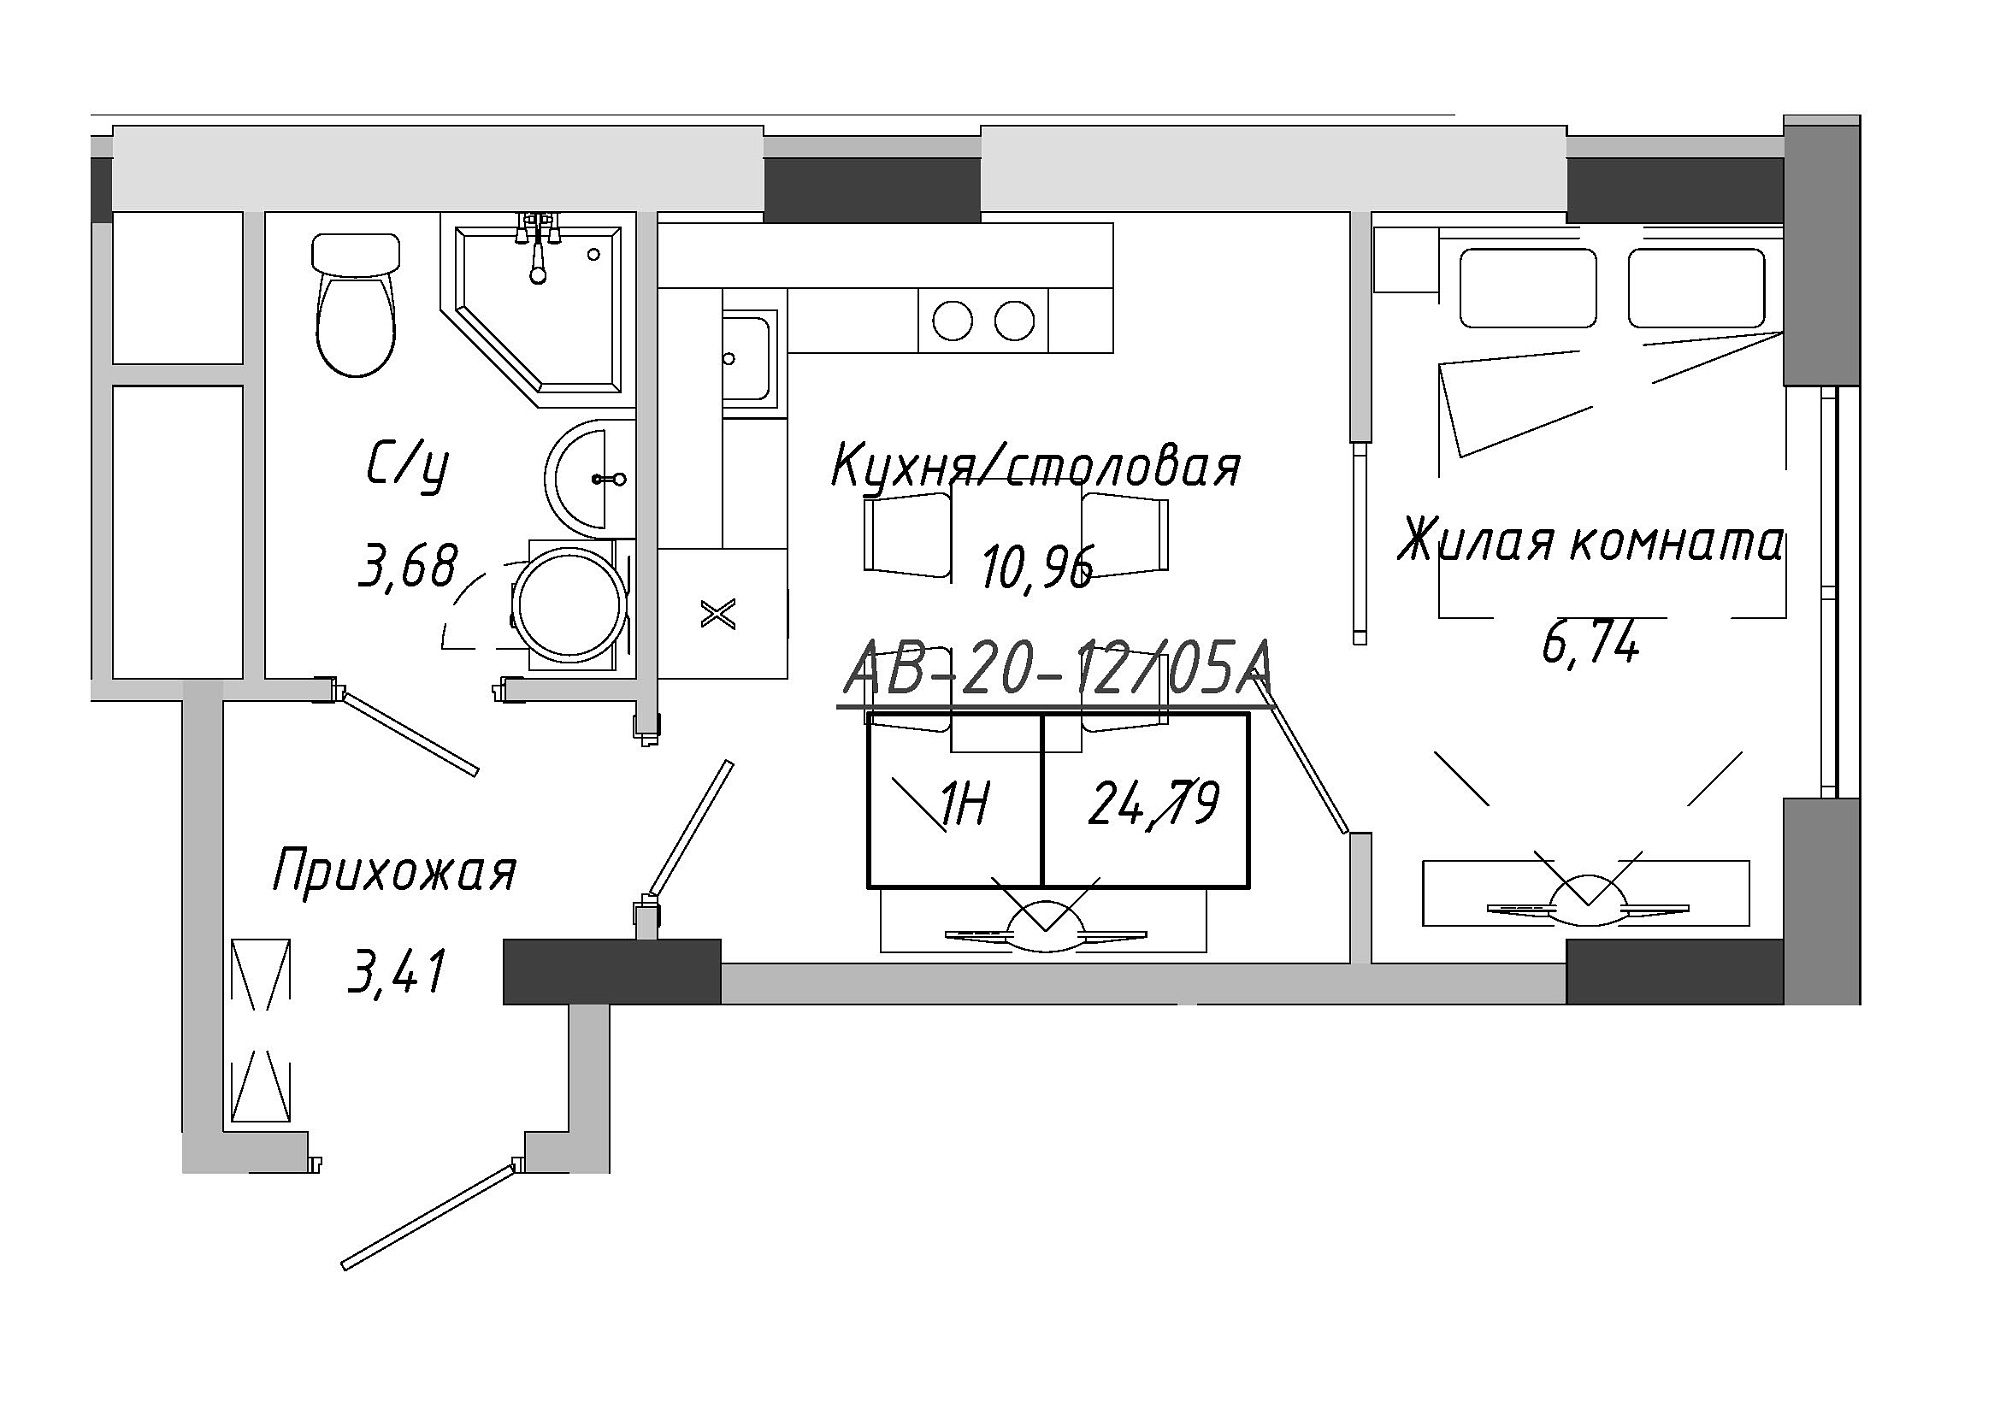 Планування 1-к квартира площею 24.41м2, AB-20-12/0005а.